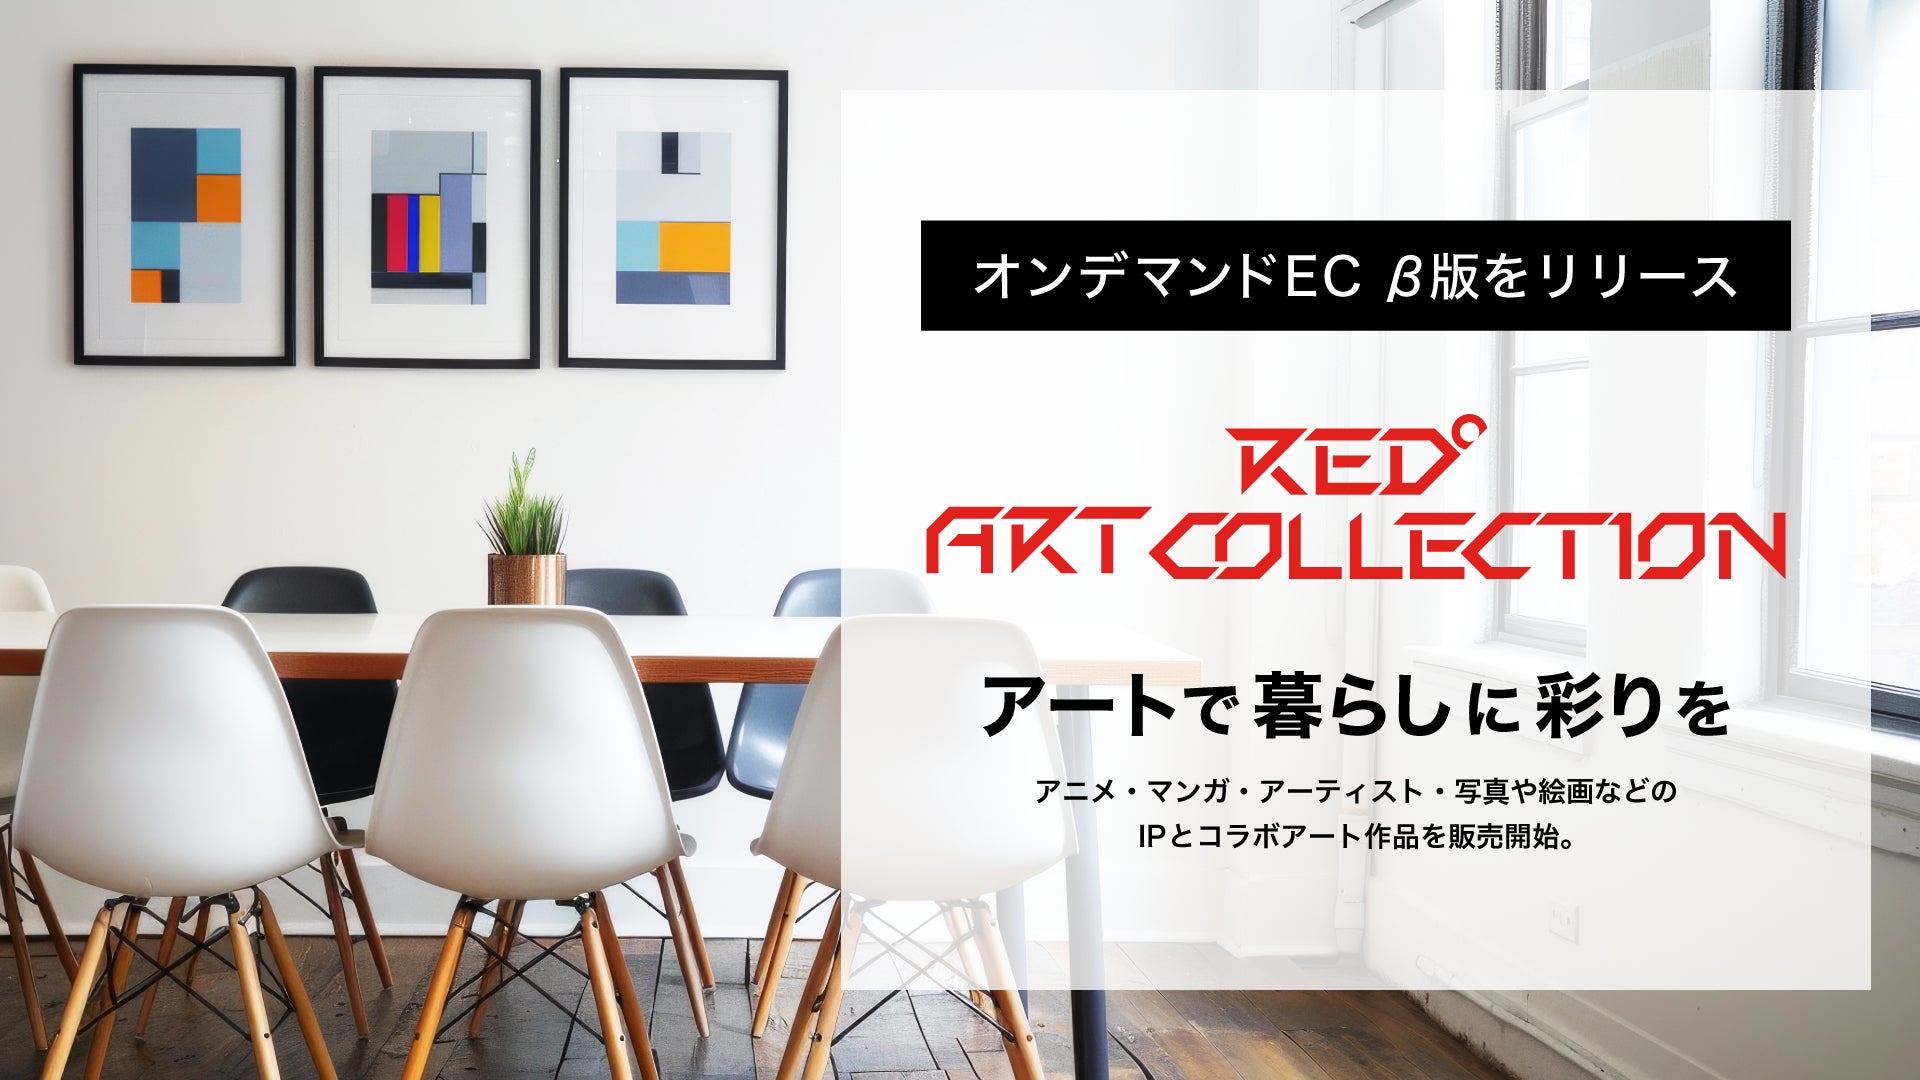 アートで暮らしに彩りを オンデマンドEC「RED° ART COLLECTION」β版をリリース